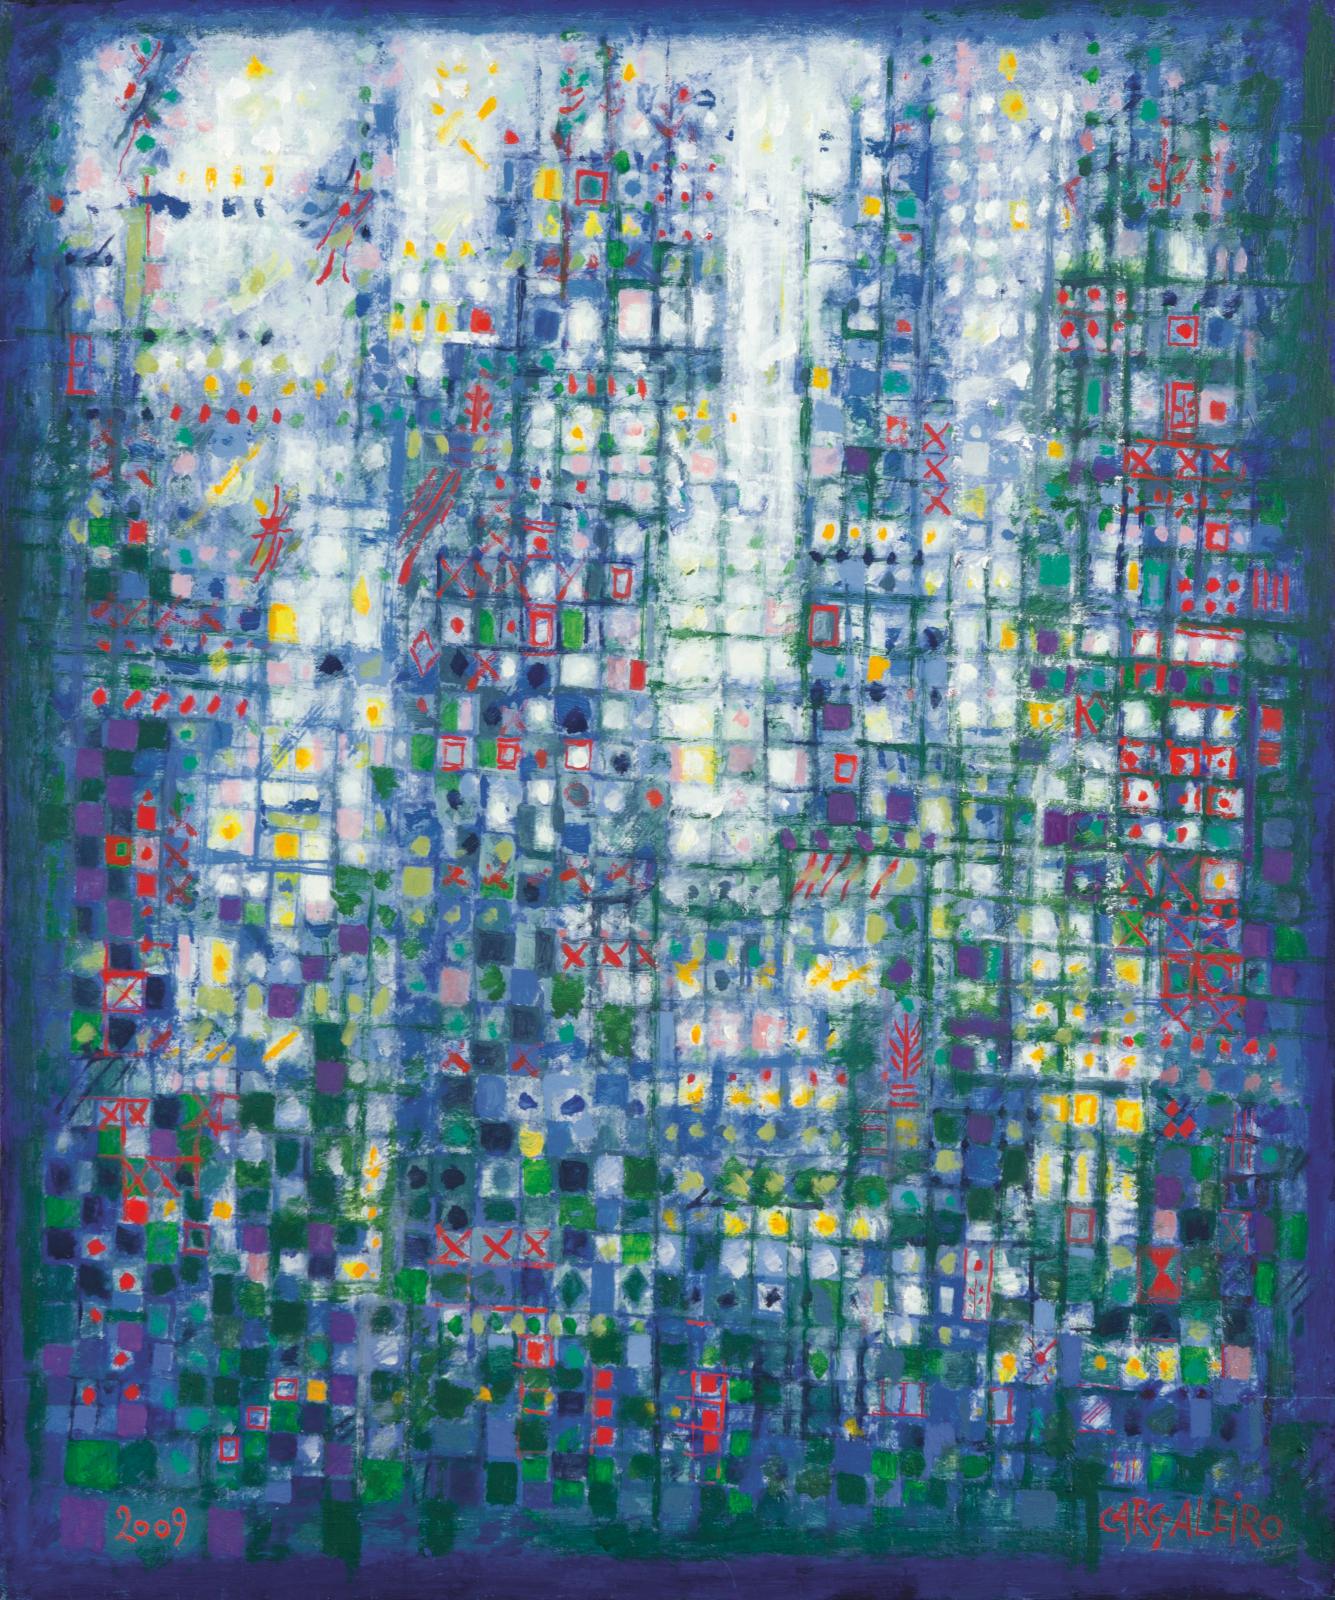 Manuel Cargaleiro (né en 1927), Paysage aux carreaux blancs, 2000, huile sur toile, 73,3 x 60 cm. Crédit photo Helene Bailly Gallery, Pari